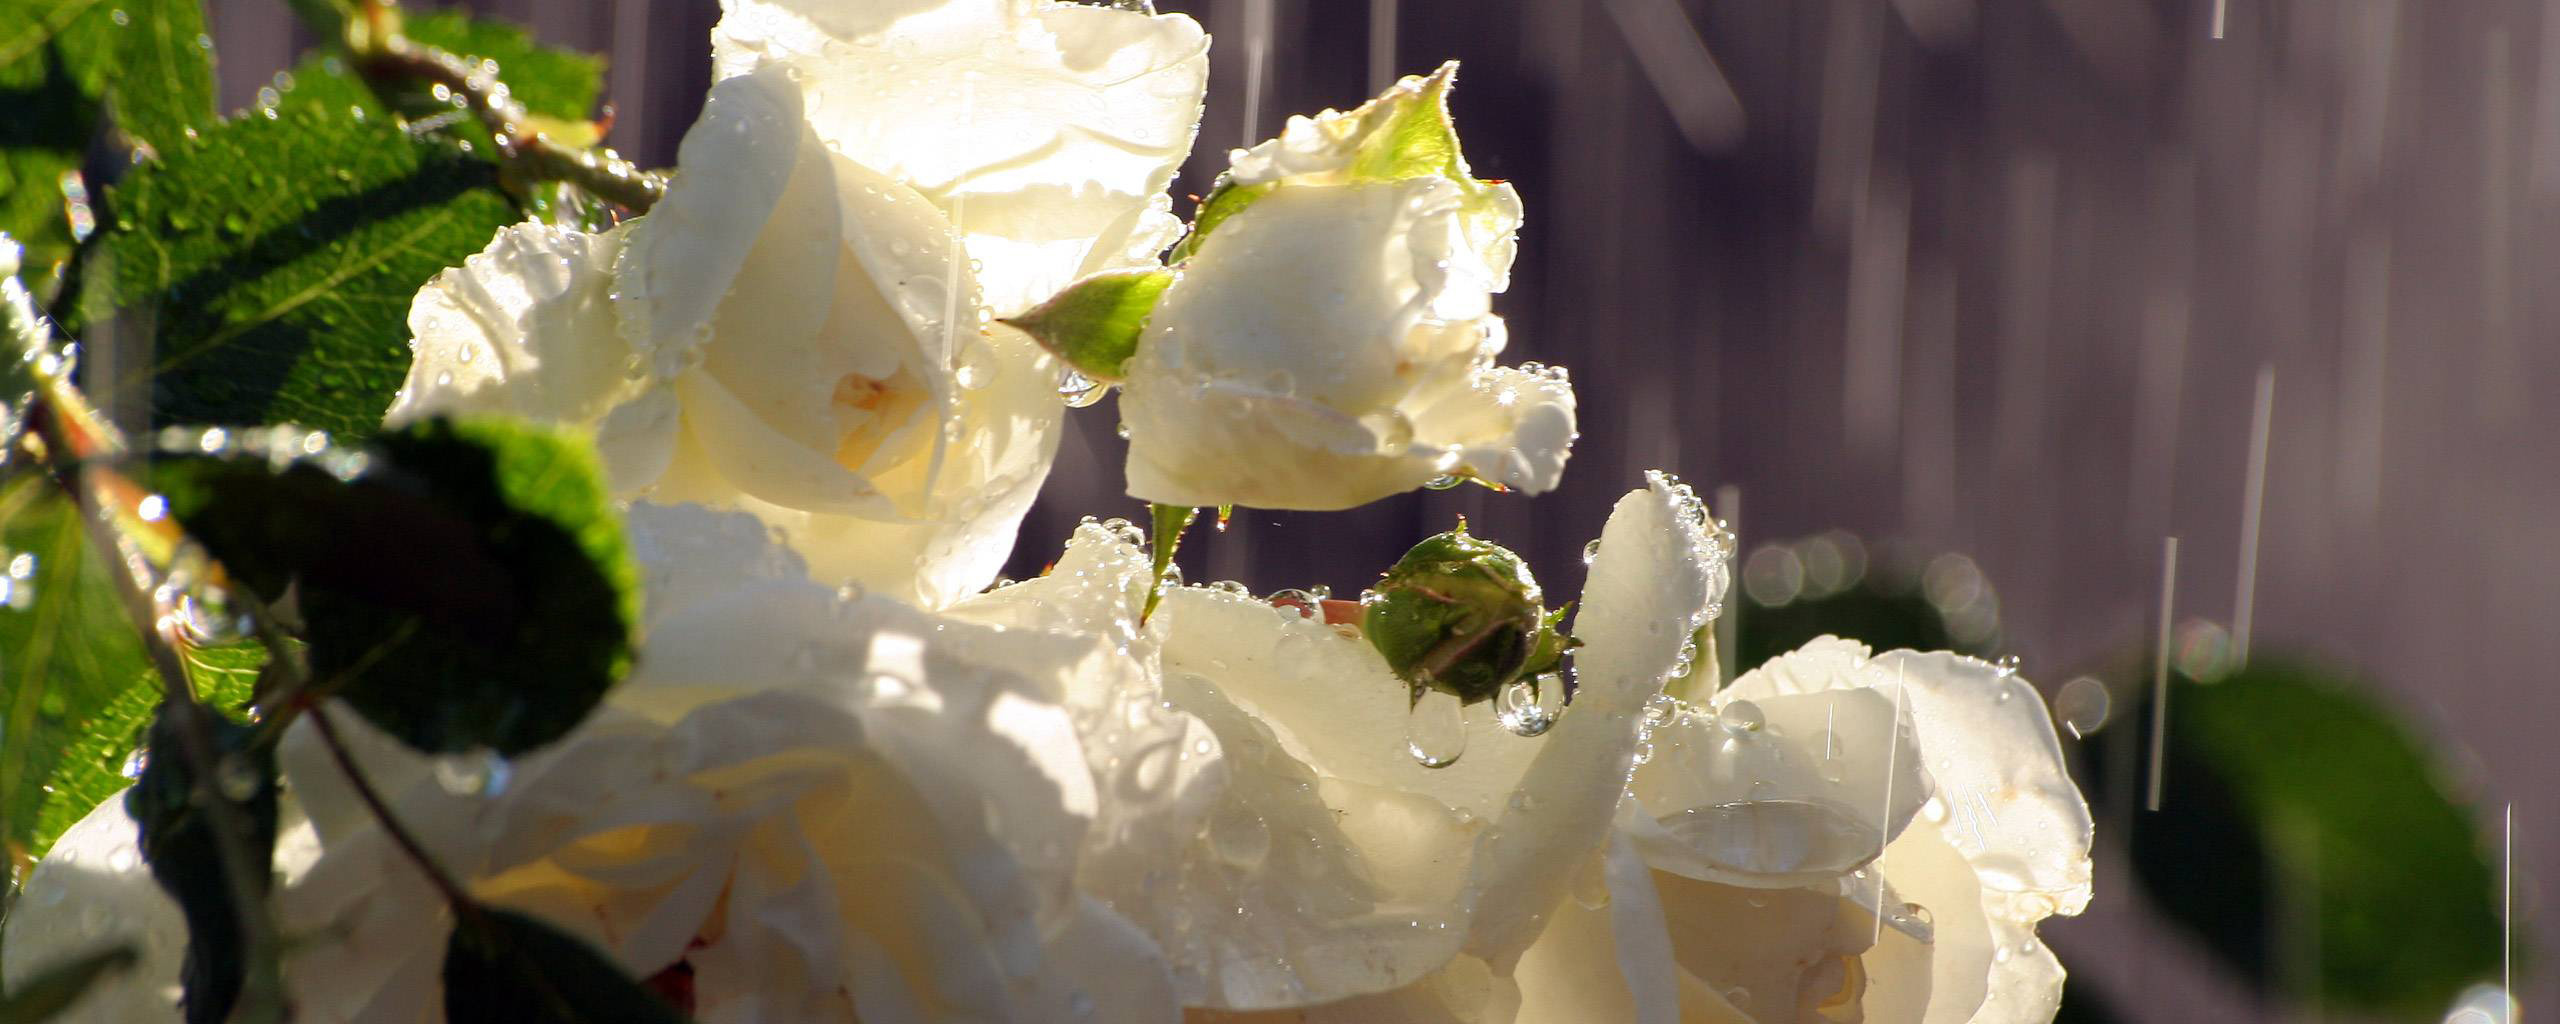 Белая роза в каплях дождя